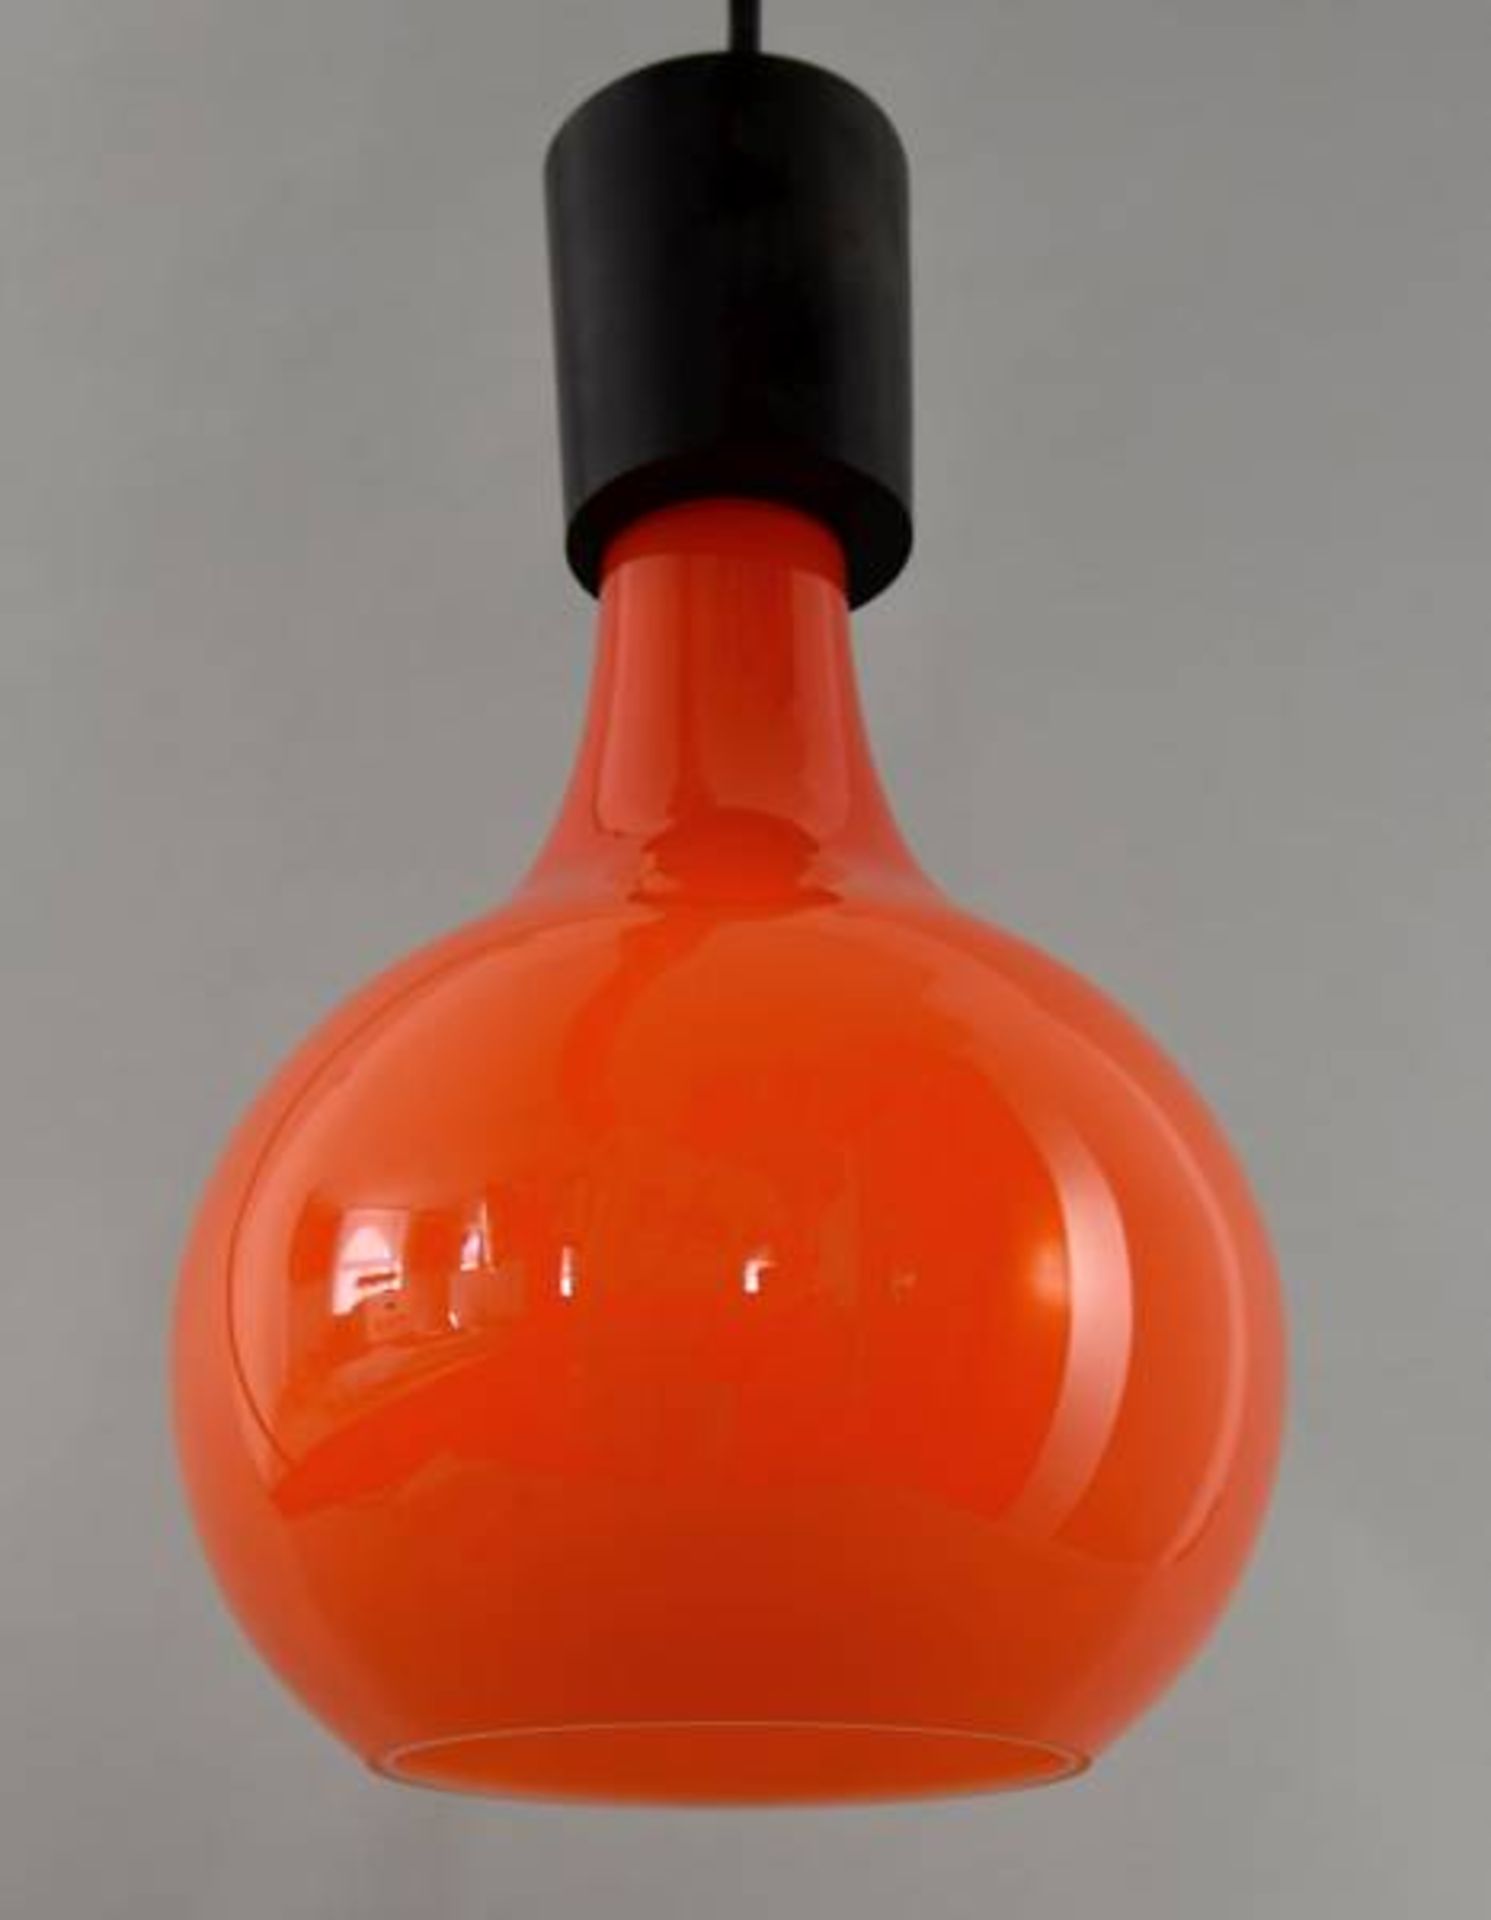 HÄNGELAMPE tulpenförmiger Glaskorpus in orangenem Überfang, innen weiß, Peill & Putzler, Tulip - Image 2 of 2